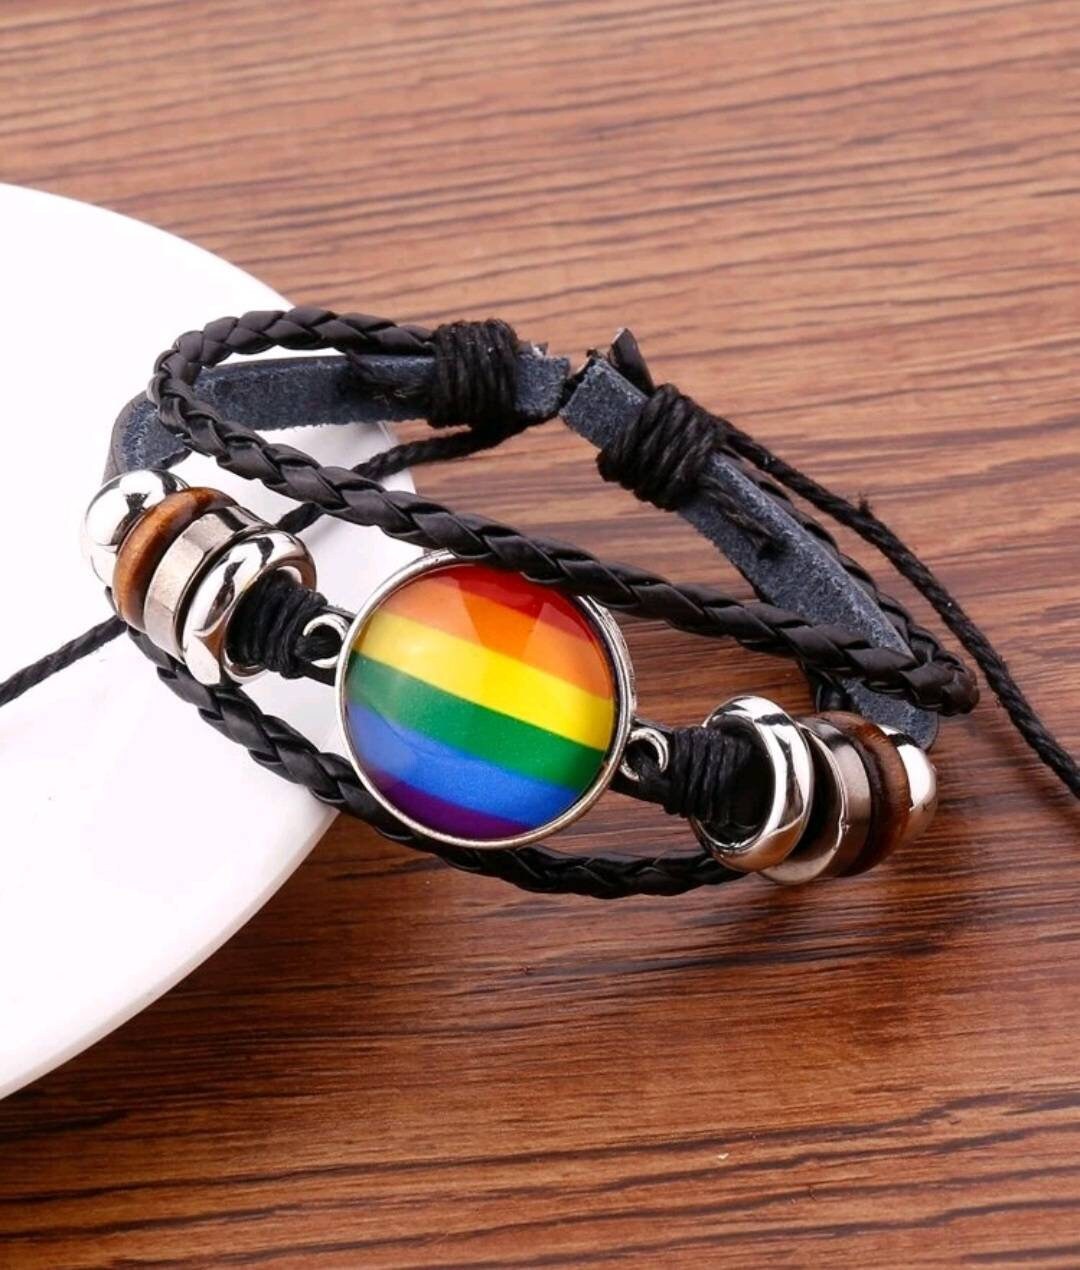 Rainbow Pride Earrings Gay Pride Jewerly LGBT Gear Pride Jewelry For Women Men Pride Jewelry Rainbow Pride Accessories LGBTQ Merch Gay Earrings Subtle Pride Stuff Rainbow Earing 